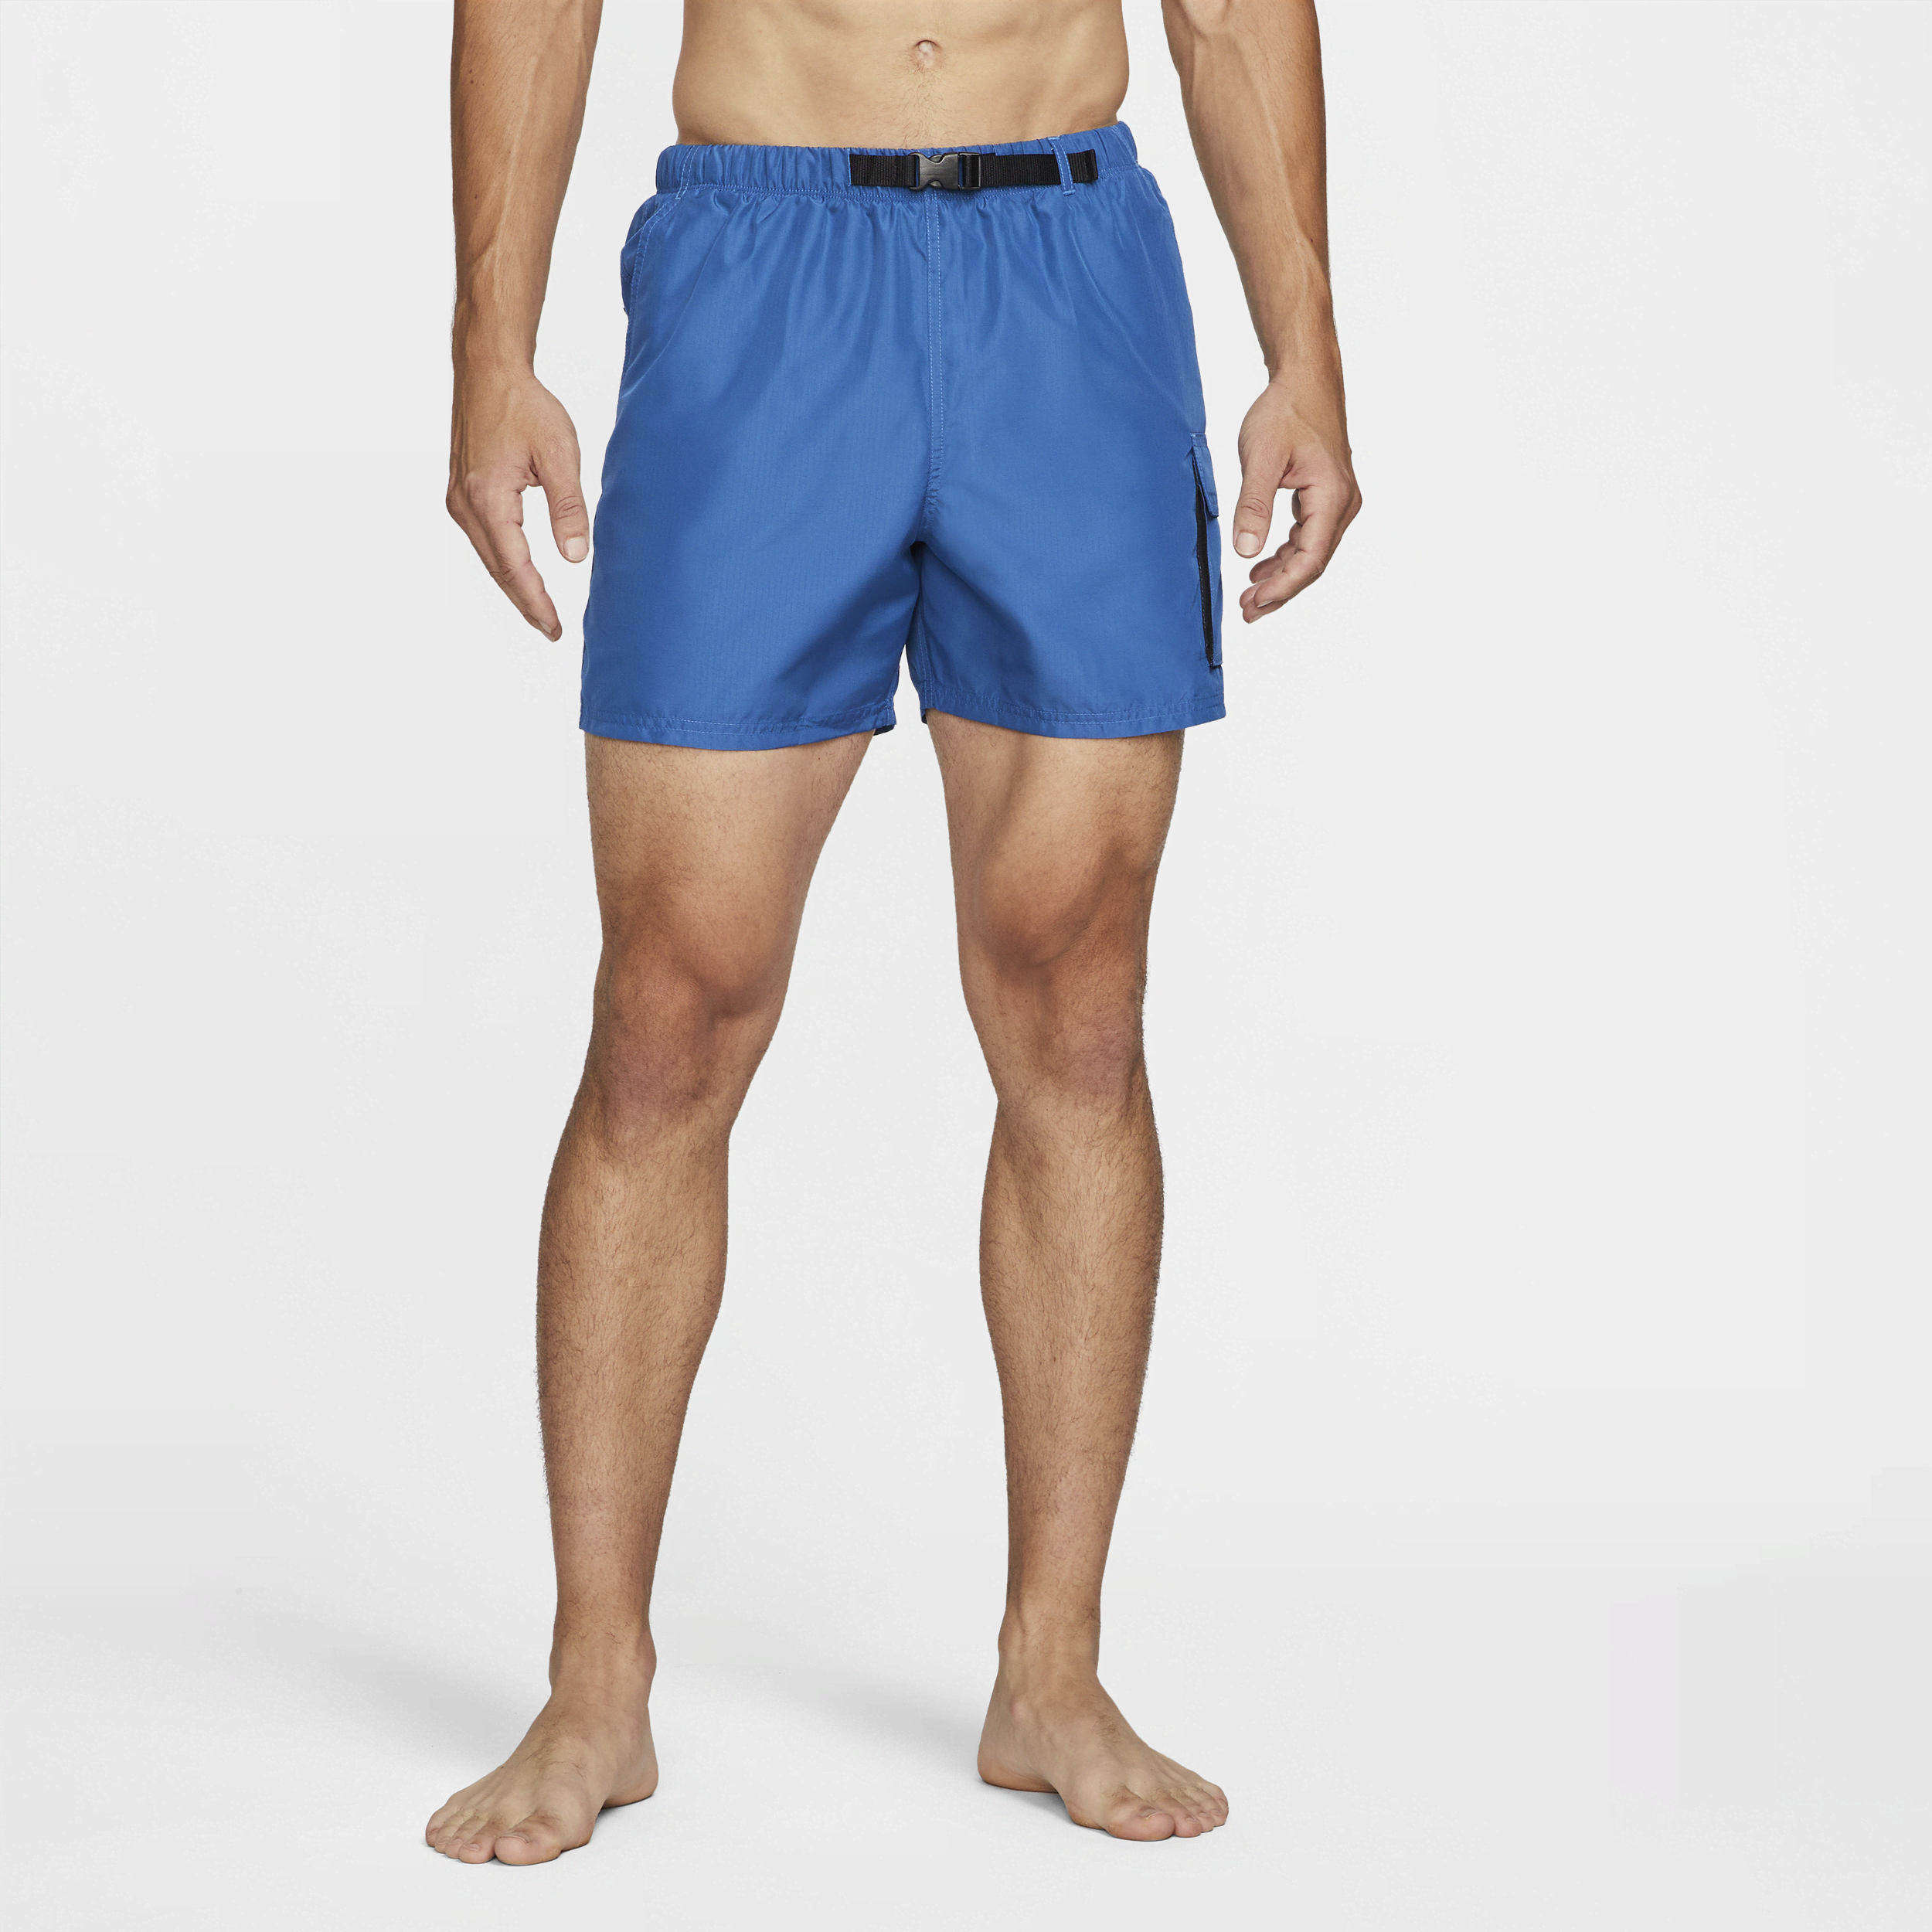 Nike Bañador plegable con cinturón de 13 cm - Hombre - Azul